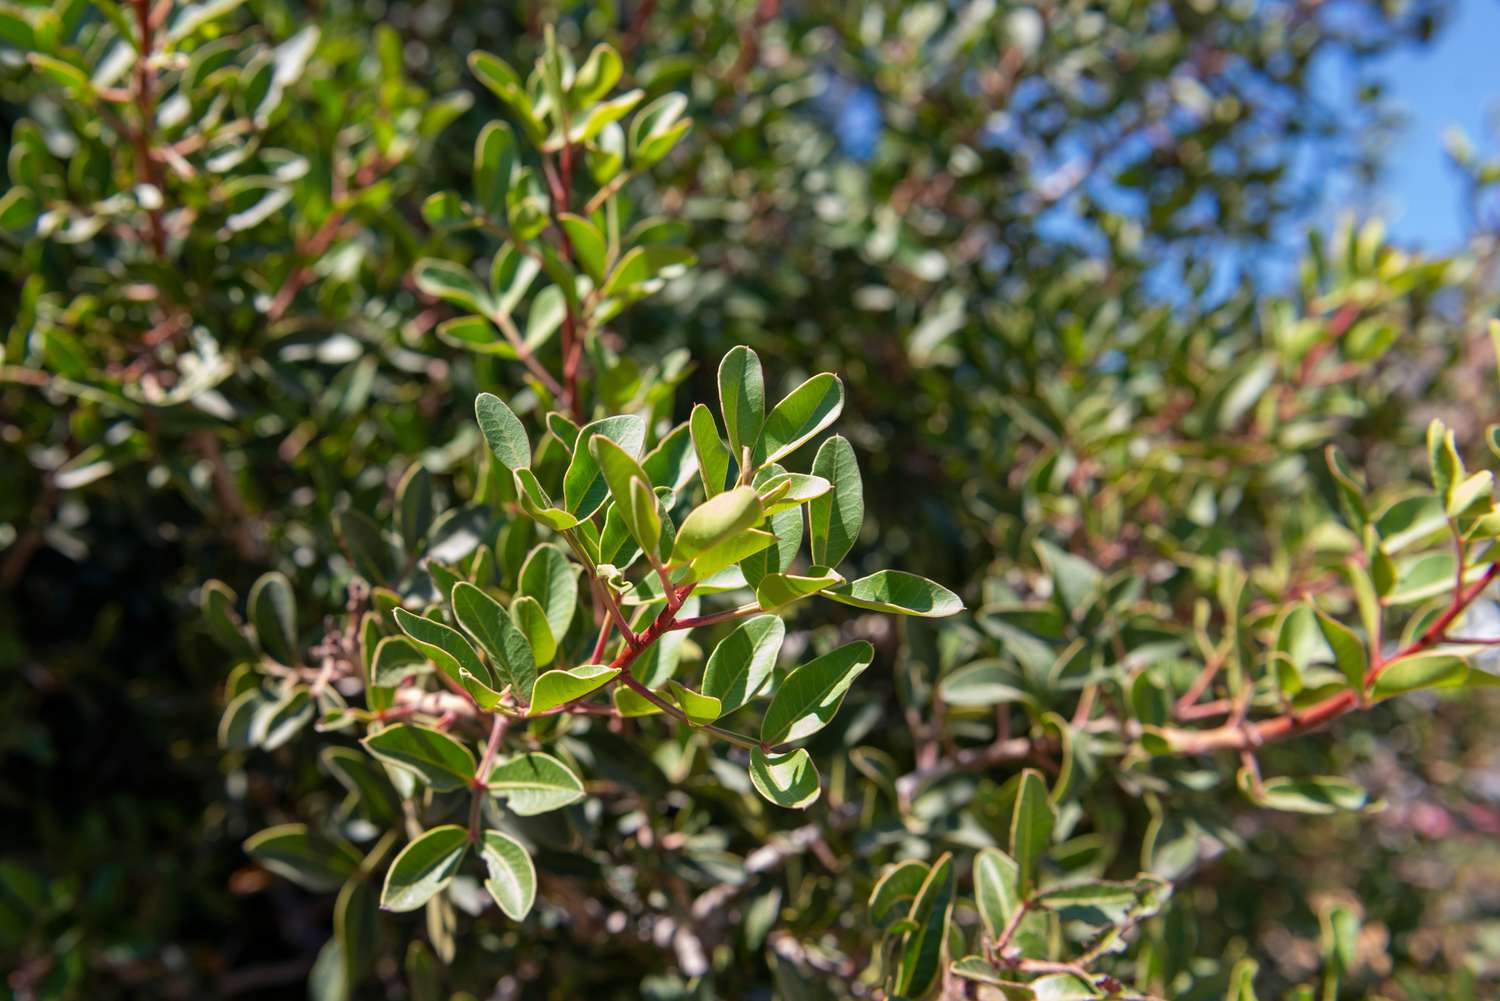 Mastixbaumzweige mit kleinen ovalen Blättern an roten Stämmen in Nahaufnahme